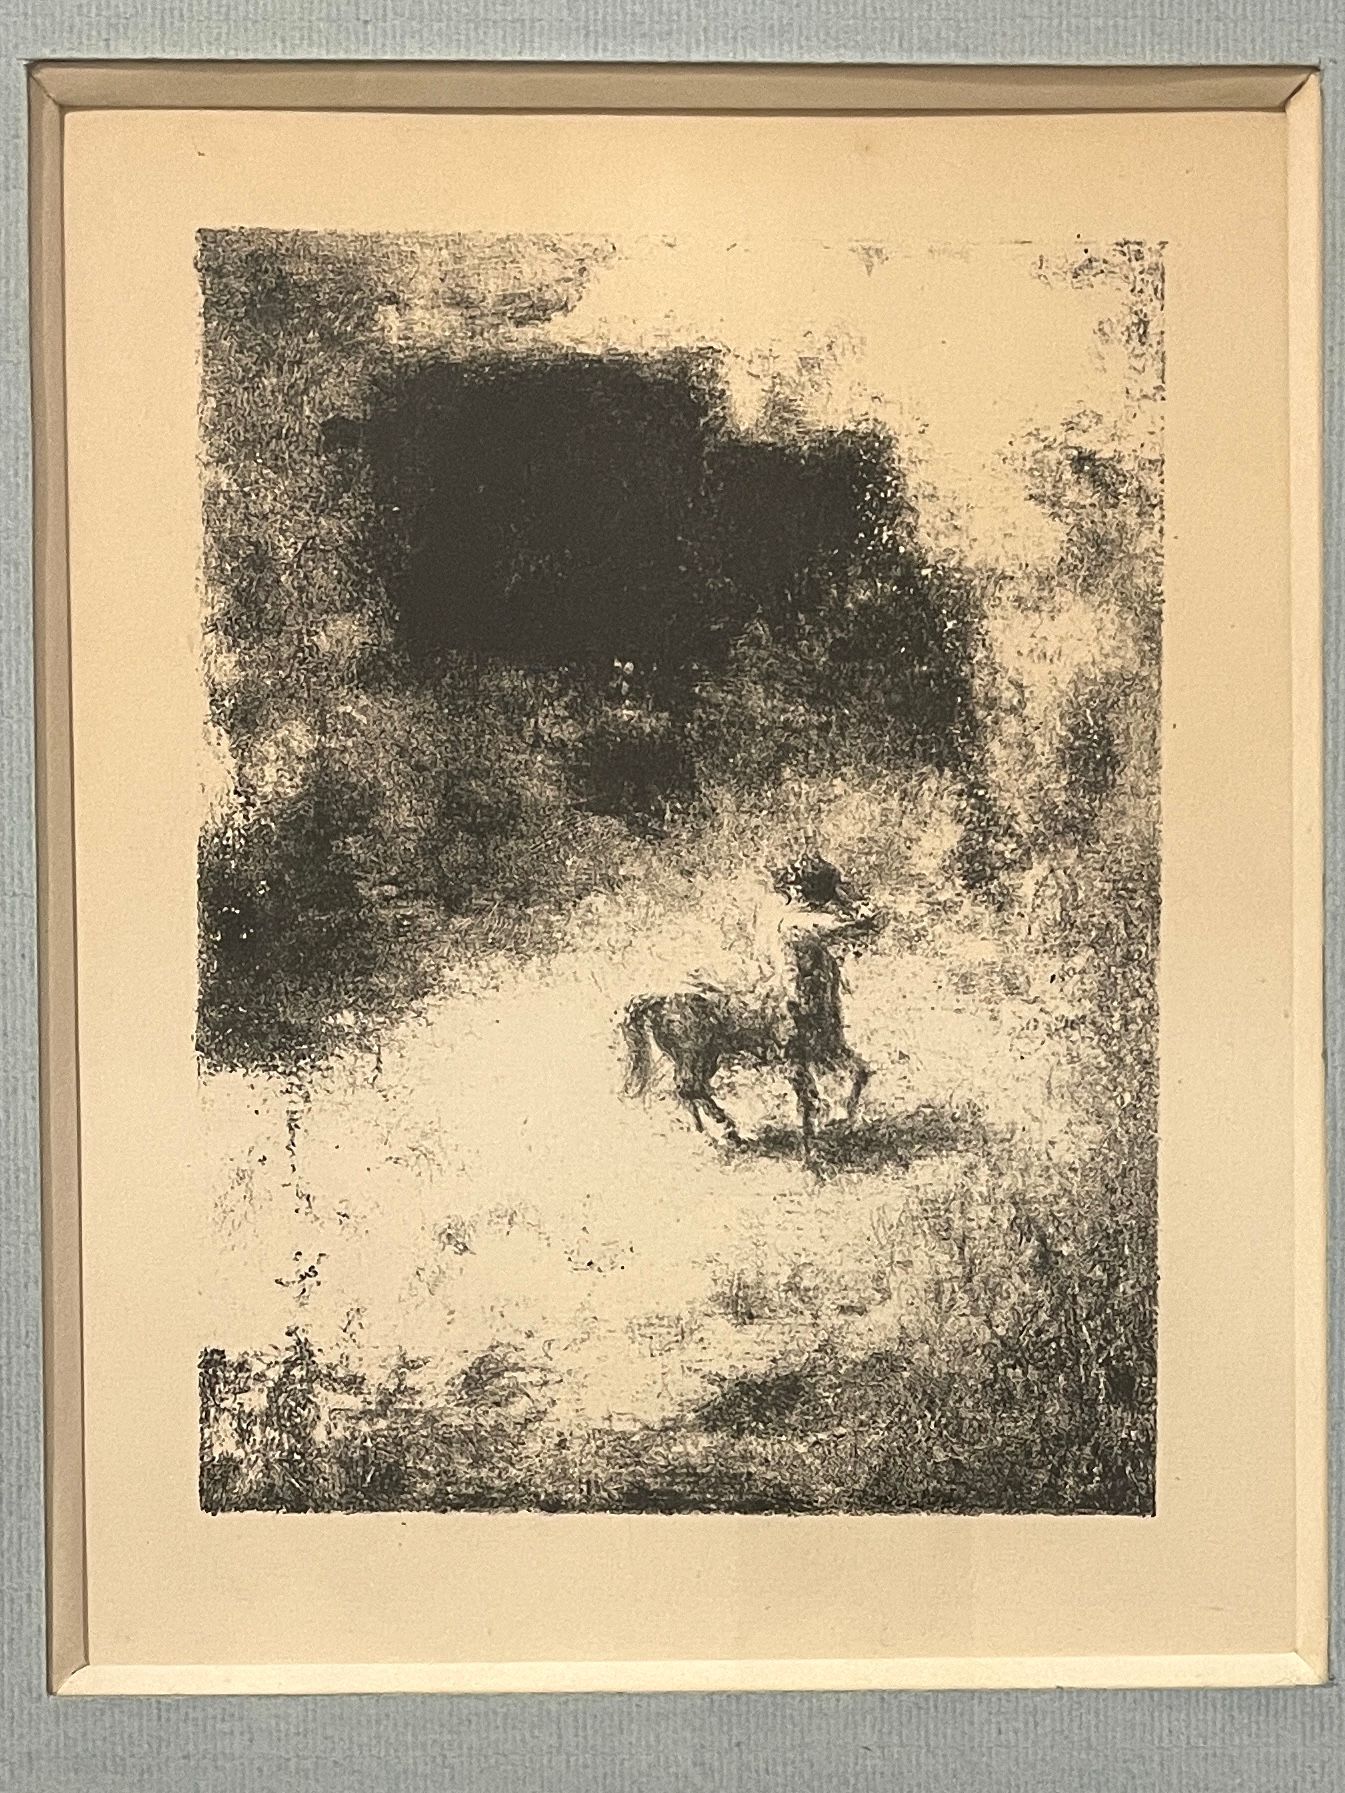 Null 泽维尔-克-鲁塞尔(1867-1944)

阳光下空地上的小半人马

约1920-1935年

黑白石板画，印数40份

33 x 25.5厘米。

&hellip;